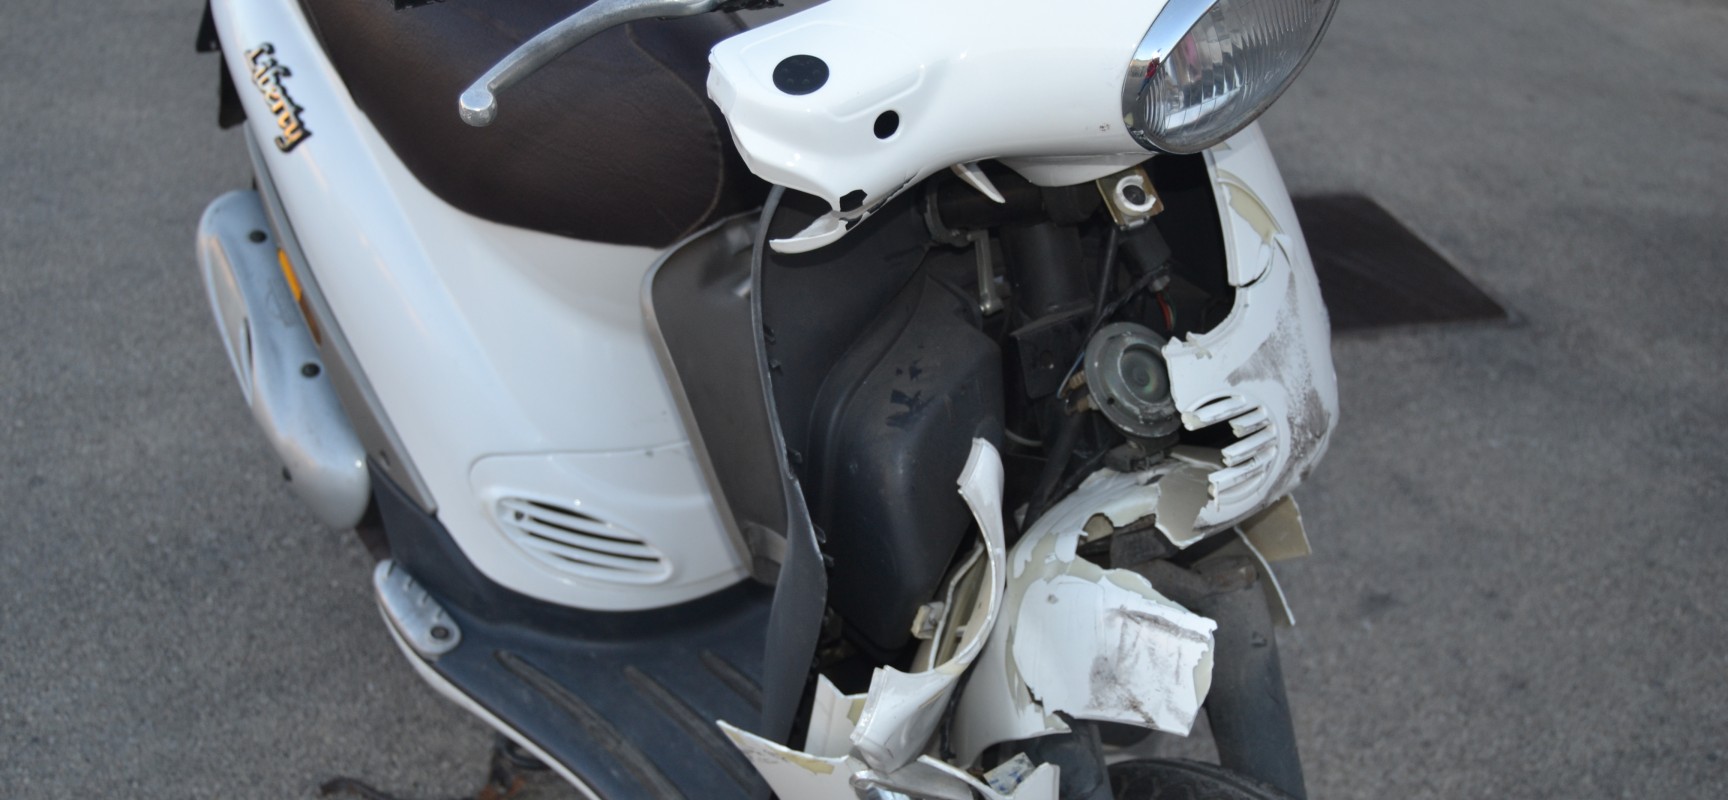 Violento impatto tra un ciclomotore ed un furgone su via Ugo la Malfa